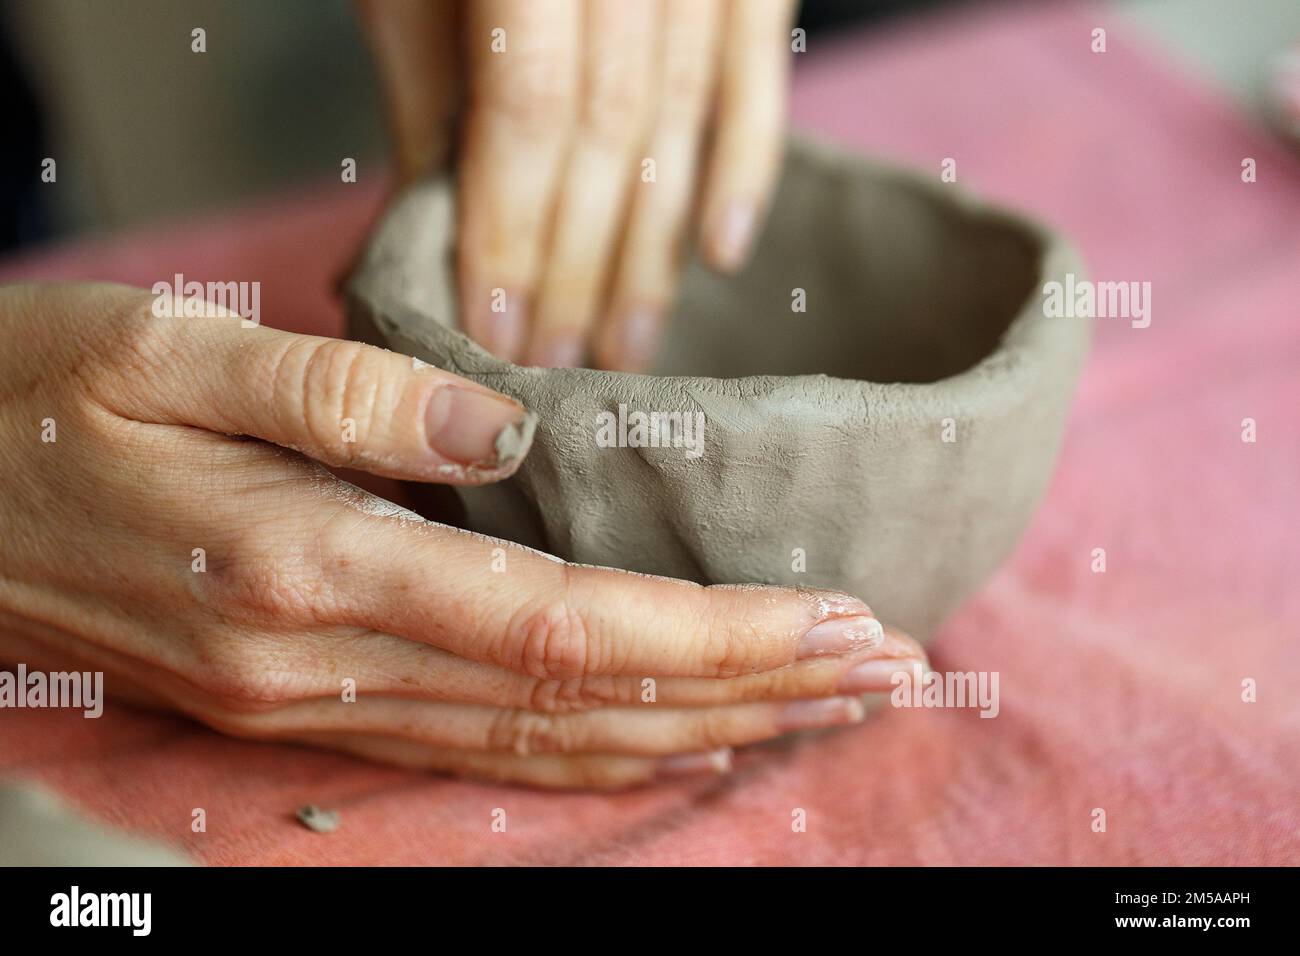 Le mani delle donne impastano l'argilla e scolpiscono una tazza da essa. Il processo di fabbricazione di un prodotto ceramico,primo piano. Foto Stock